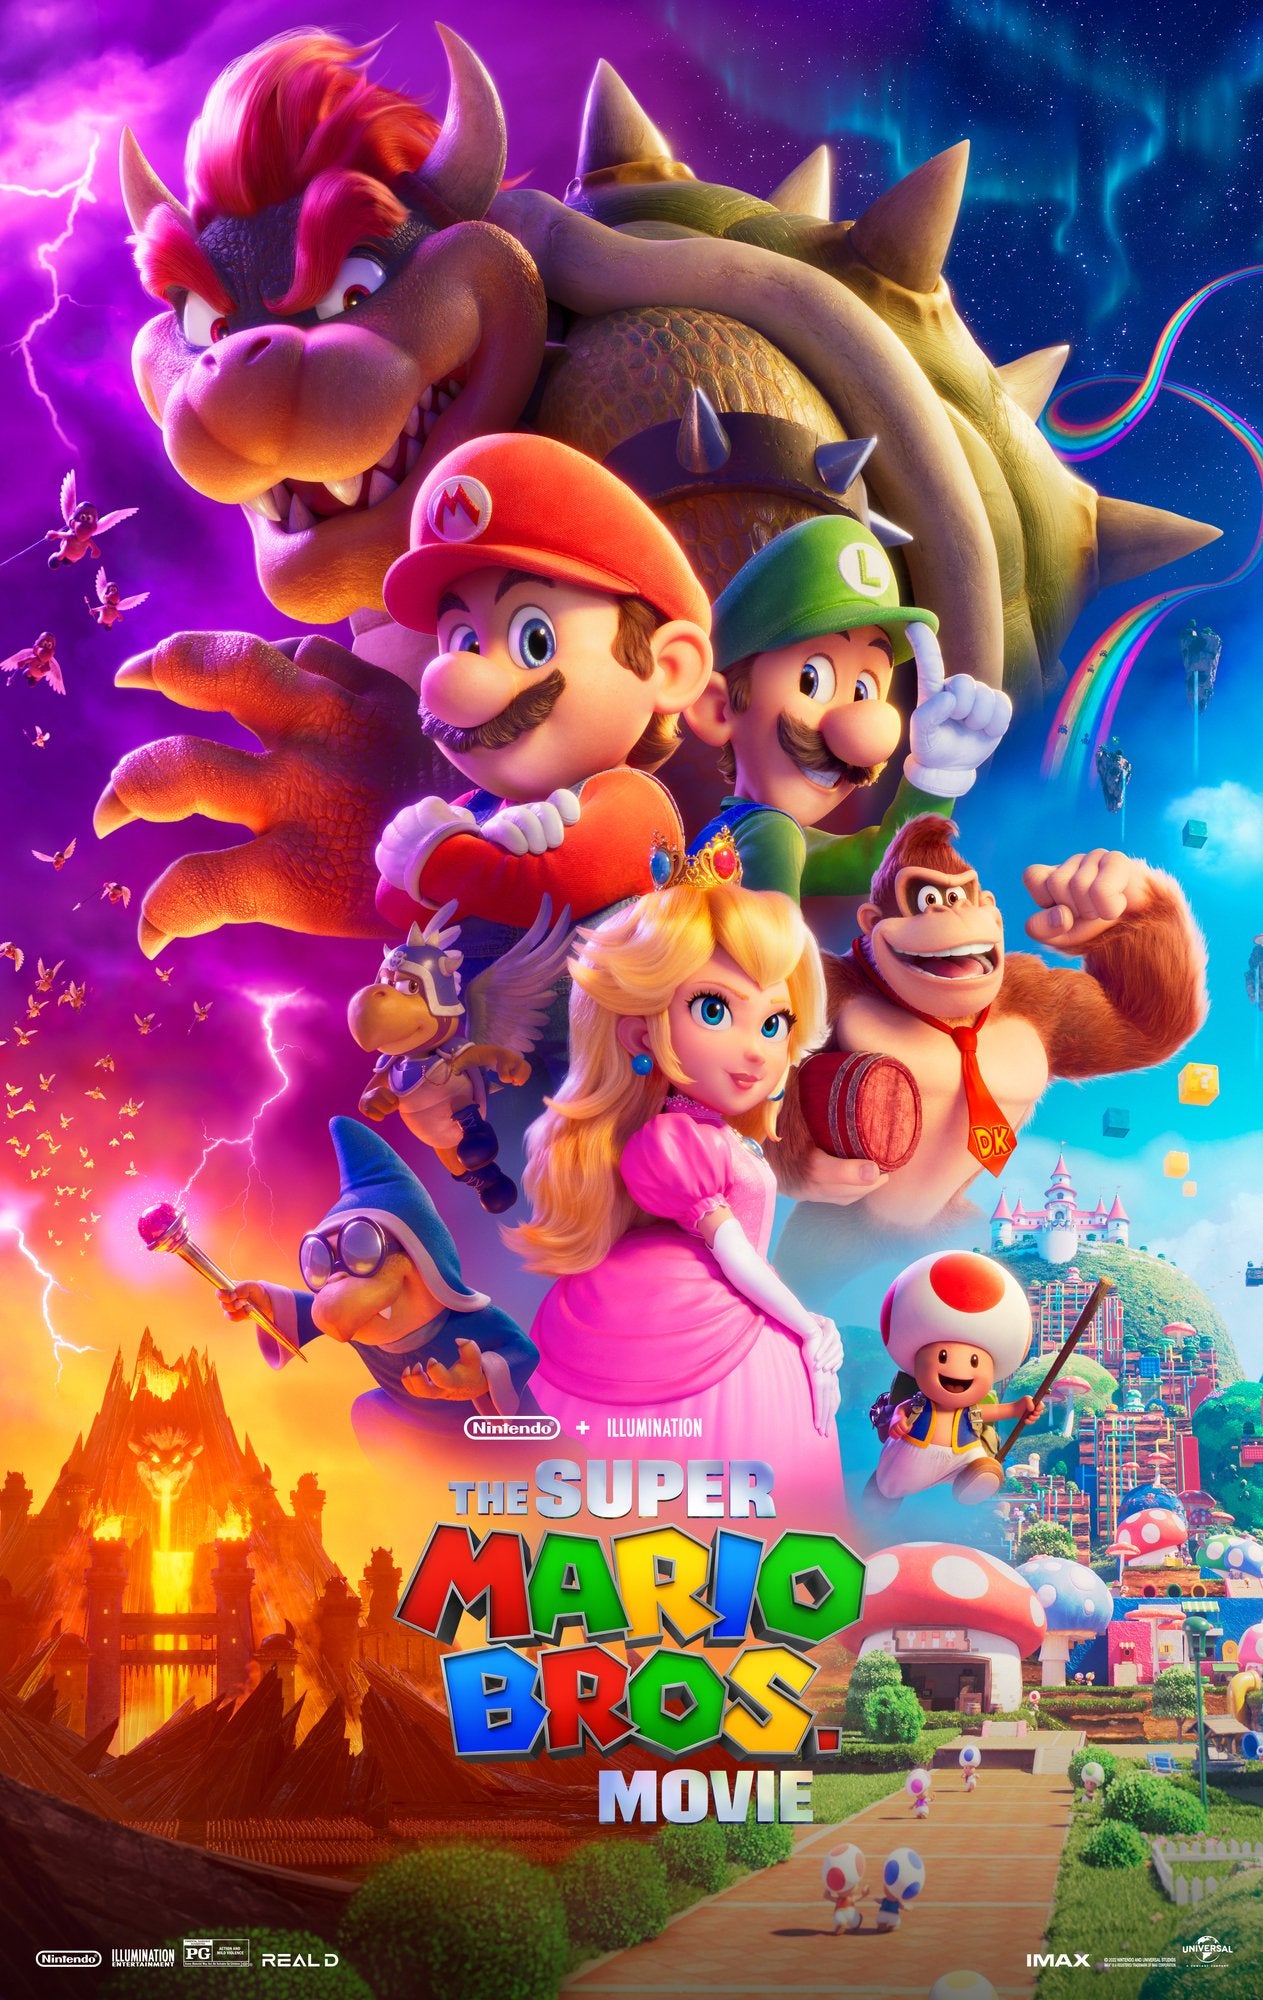 [รีวิว] The Super Mario Bros. Movie: เด็กน้อย-เด็กหนวดมีกรี๊ด แต่ผู้กำกับยังอ่อนประสบการณ์ไปหน่อย